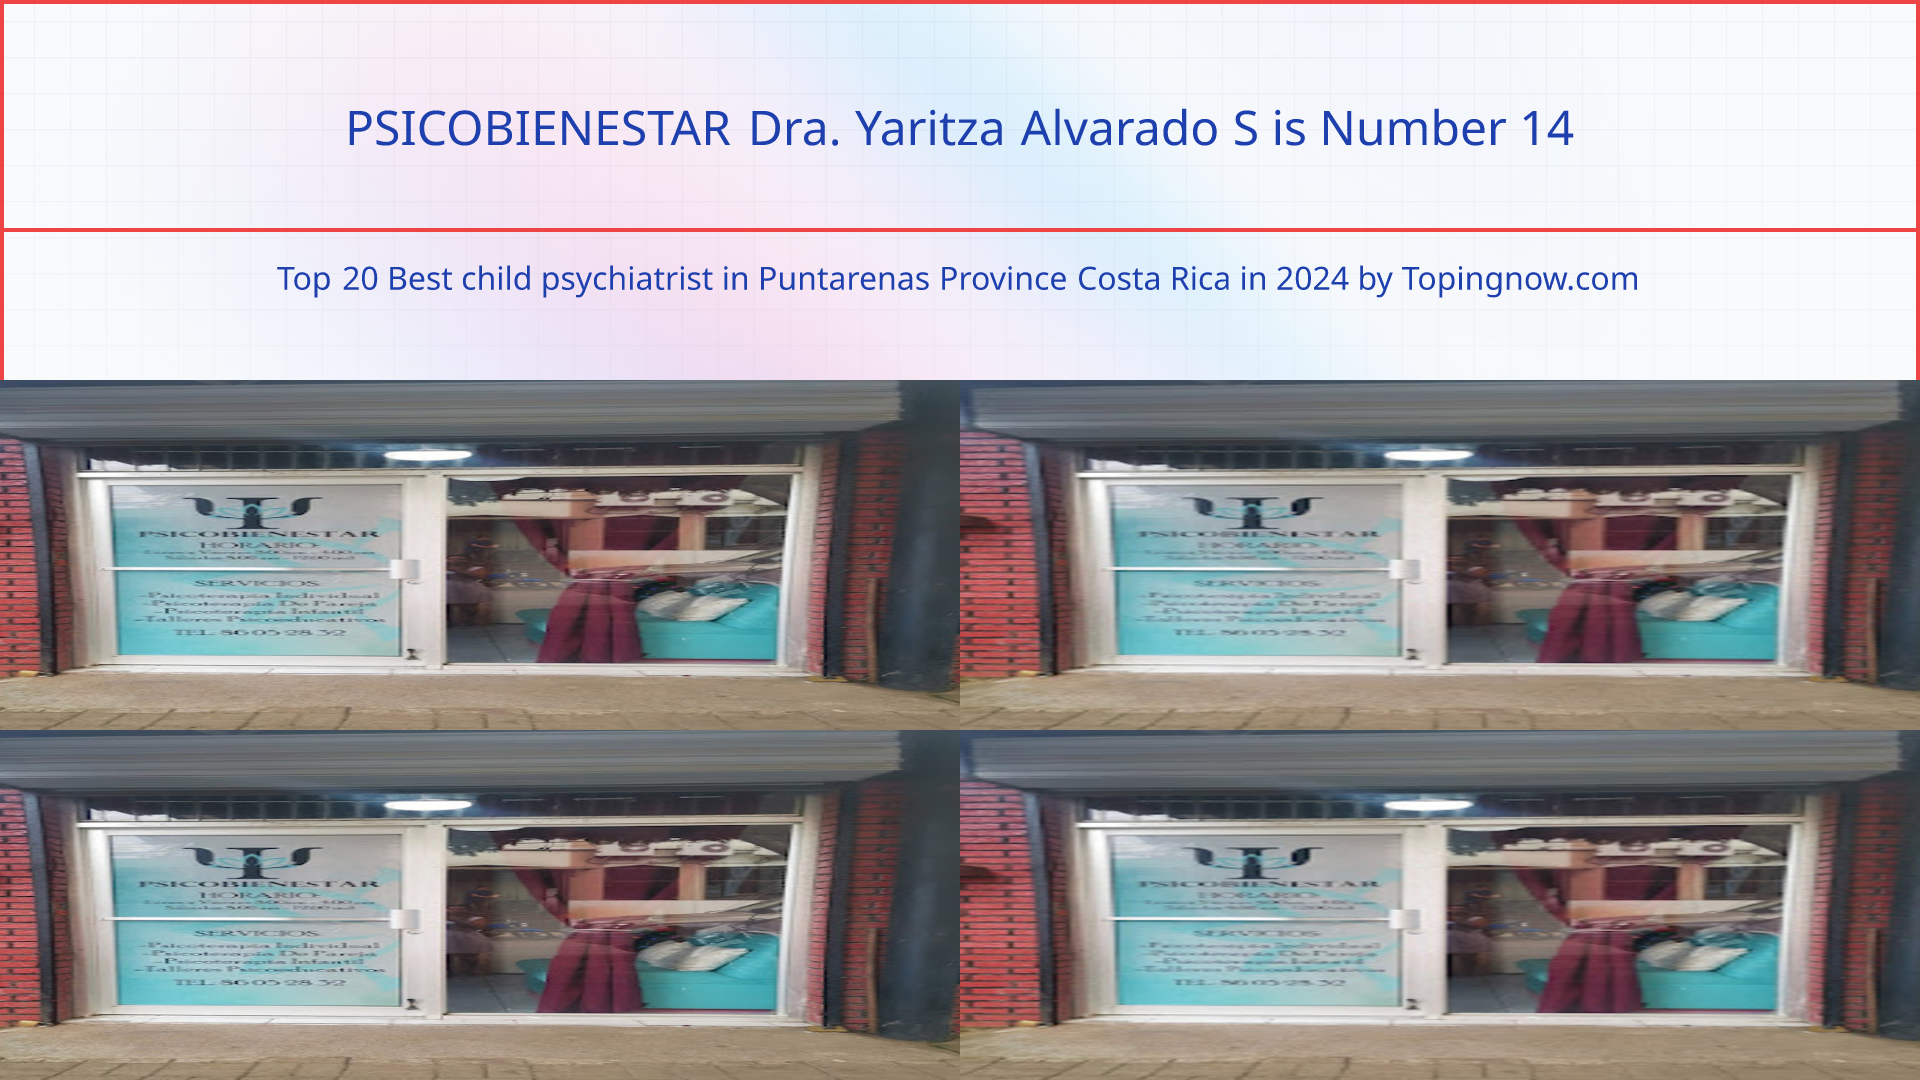 PSICOBIENESTAR Dra. Yaritza Alvarado S: Top 20 Best child psychiatrist in Puntarenas Province Costa Rica in 2024